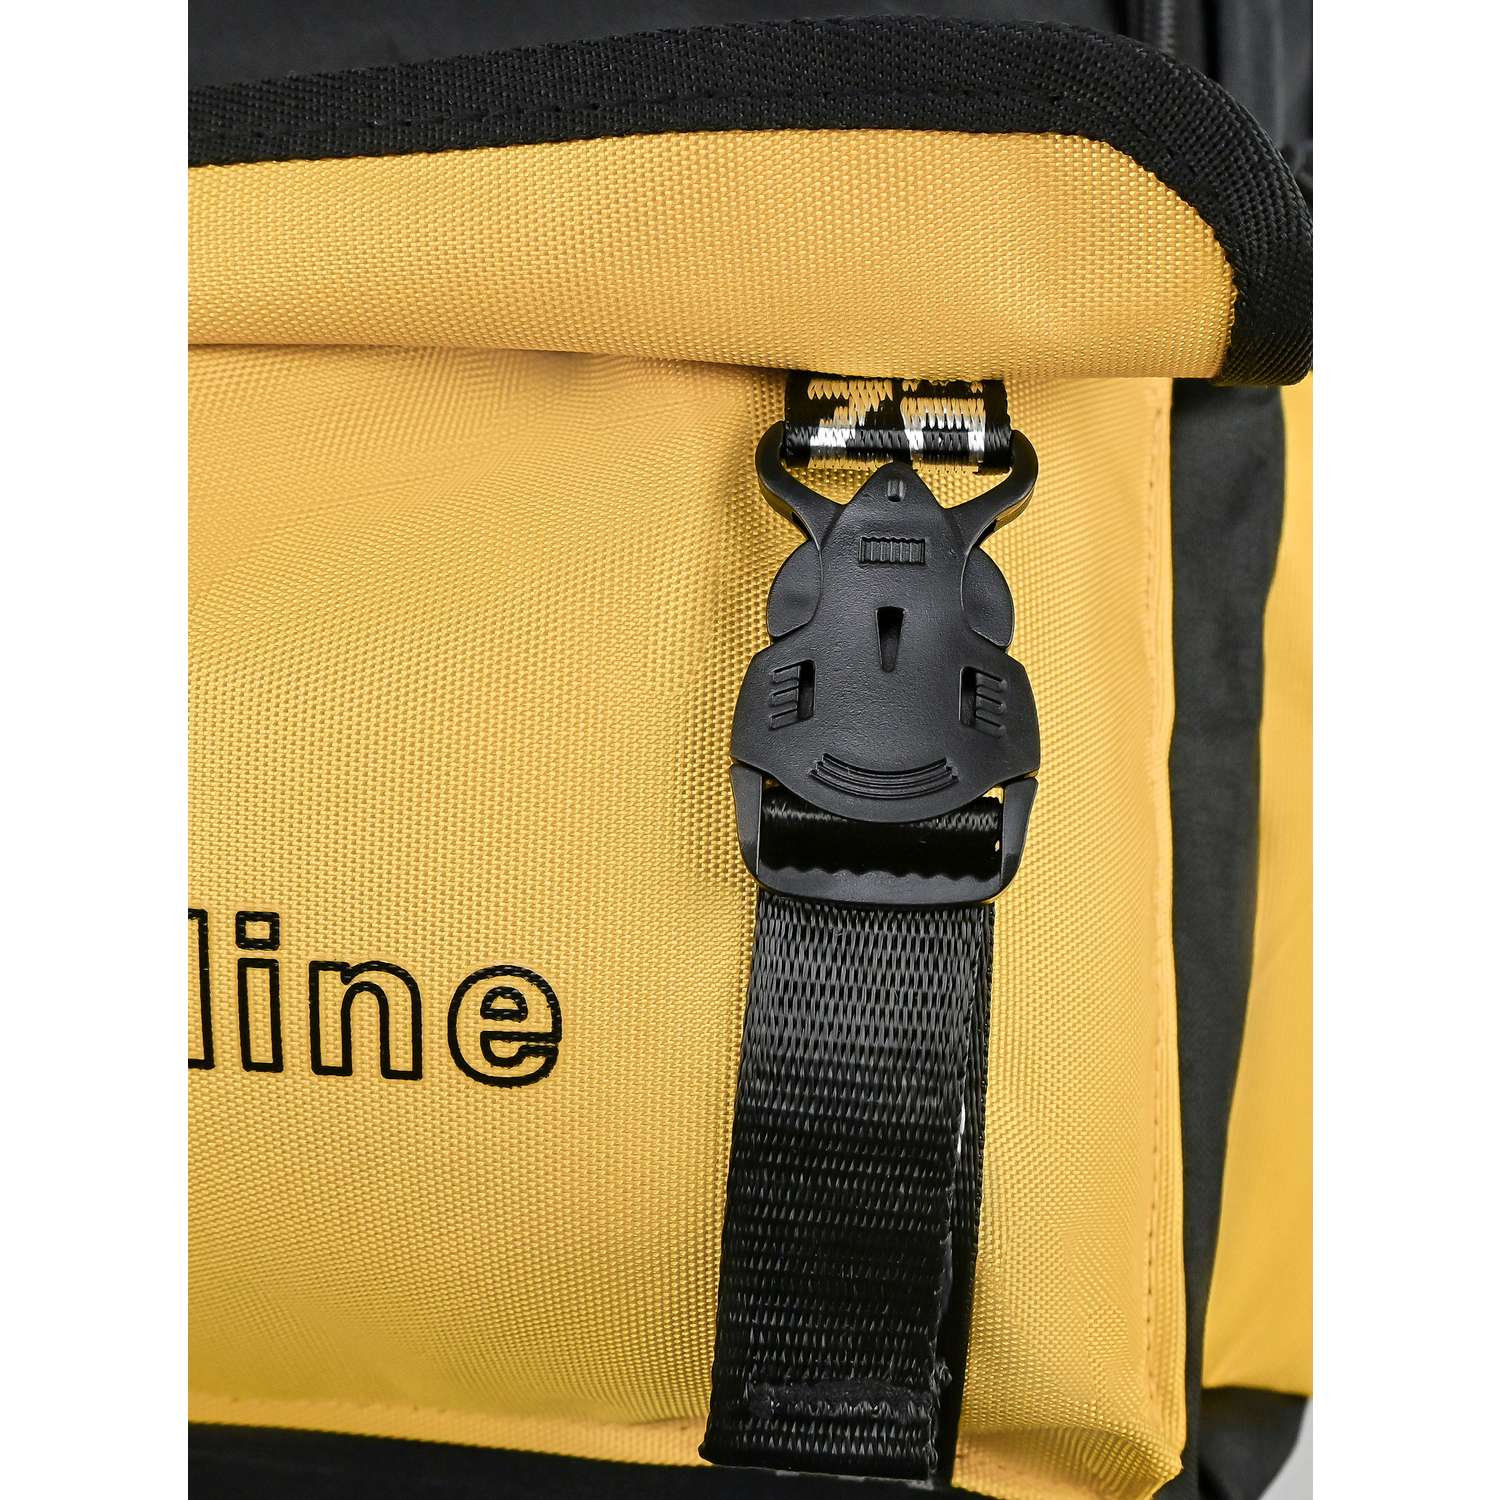 Рюкзак школьный Evoline Черный желтый с Пикачу PIKO-100 - фото 8